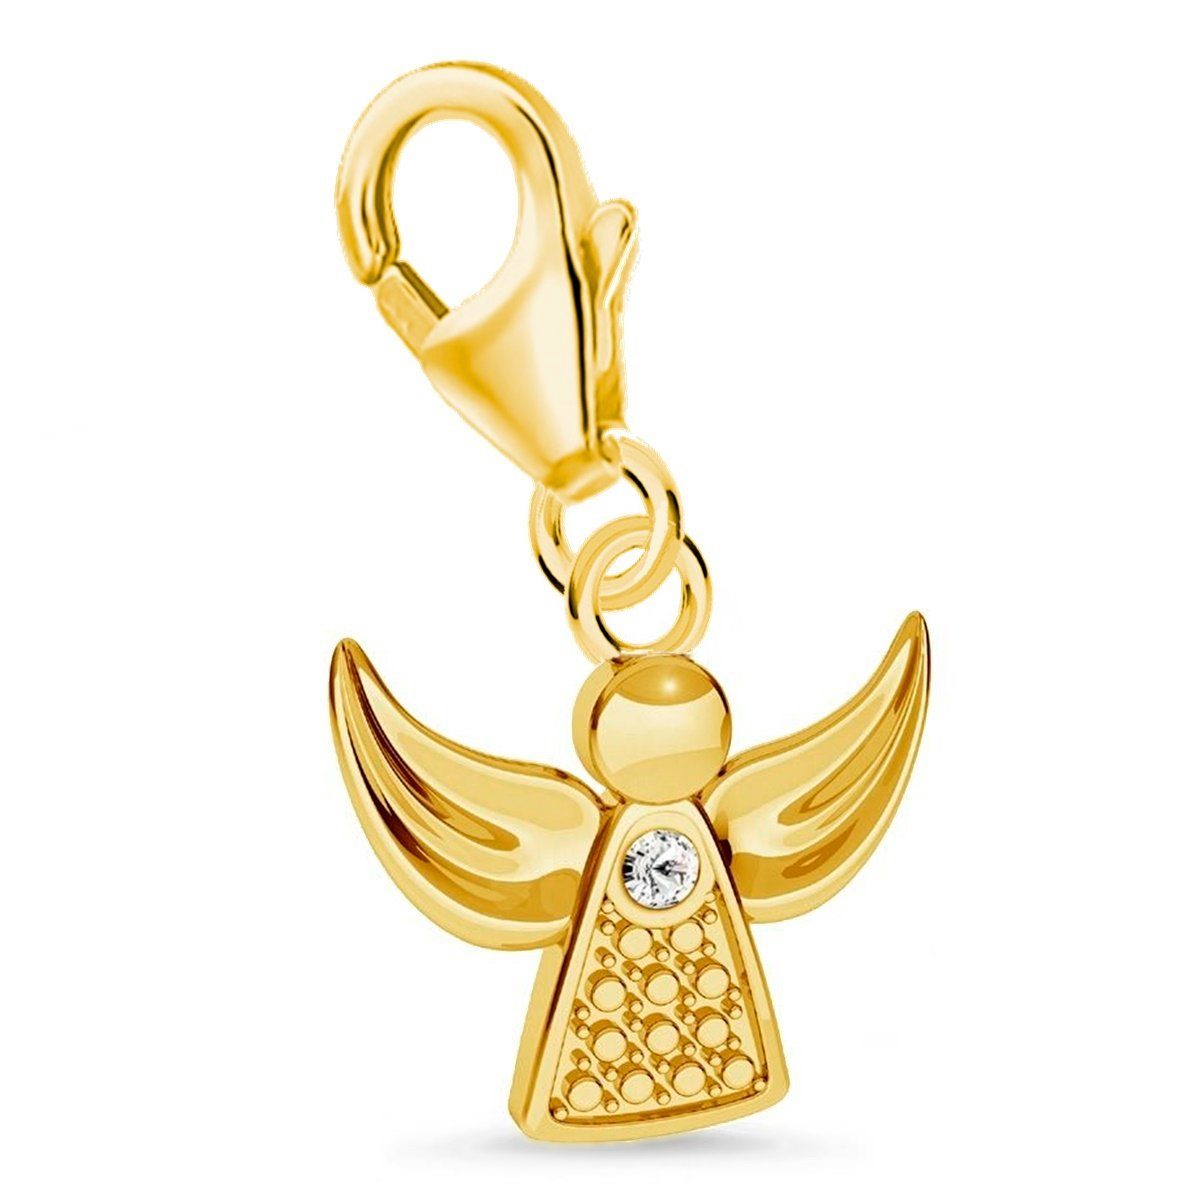 Goldene Hufeisen Charm Engel Engel Charm Anhänger mit Zirkonia Bettelarmband 925 Silber Vergoldet (inkl. Etui), für Gliederarmband oder Halskette